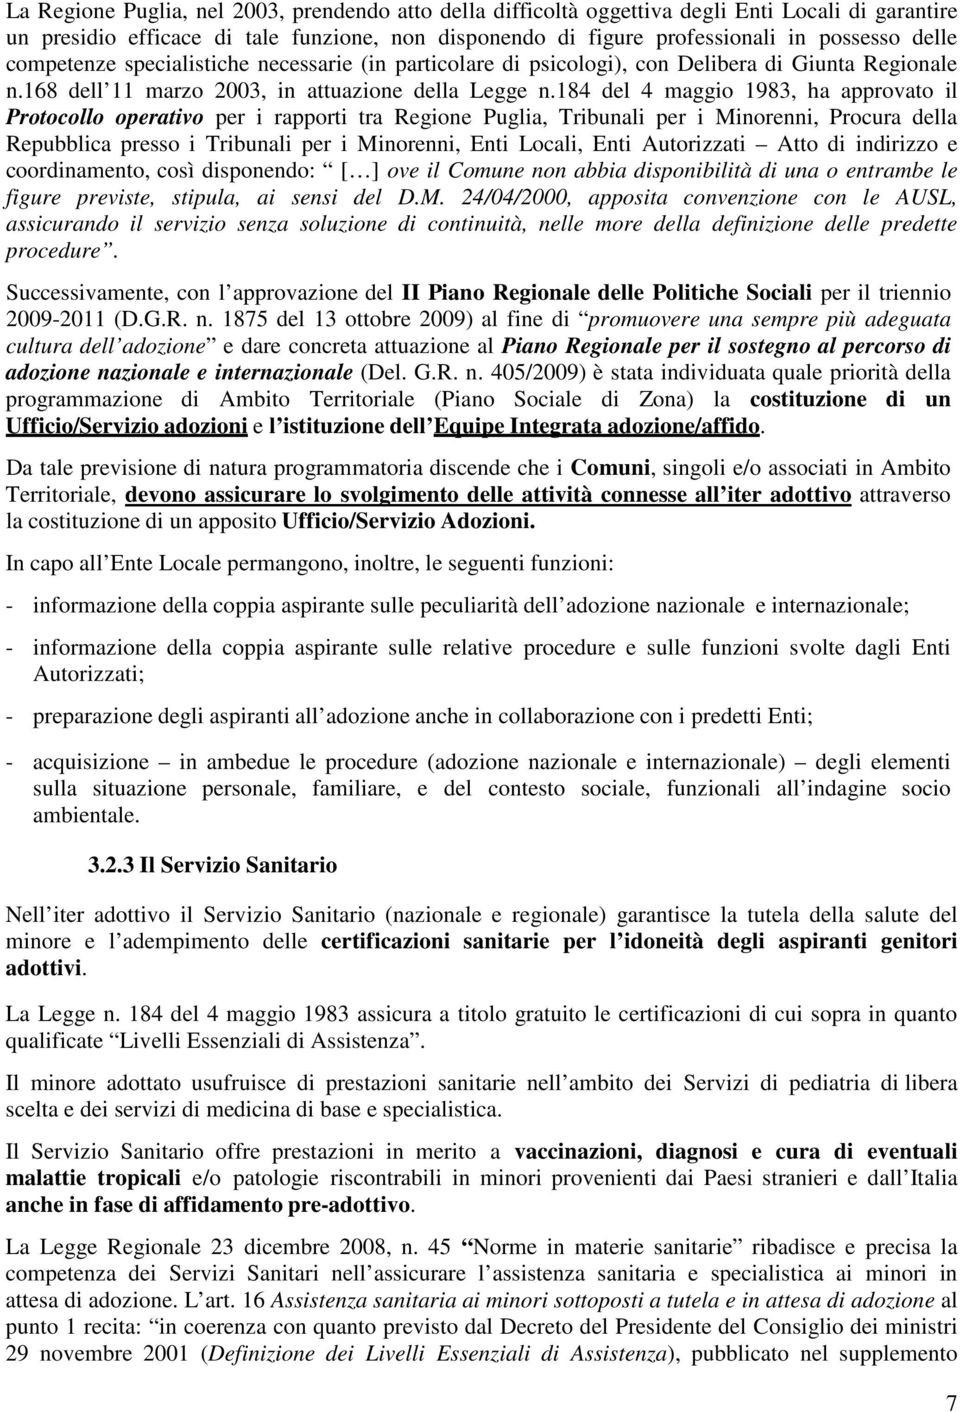 184 del 4 maggio 1983, ha approvato il Protocollo operativo per i rapporti tra Regione Puglia, Tribunali per i Minorenni, Procura della Repubblica presso i Tribunali per i Minorenni, Enti Locali,